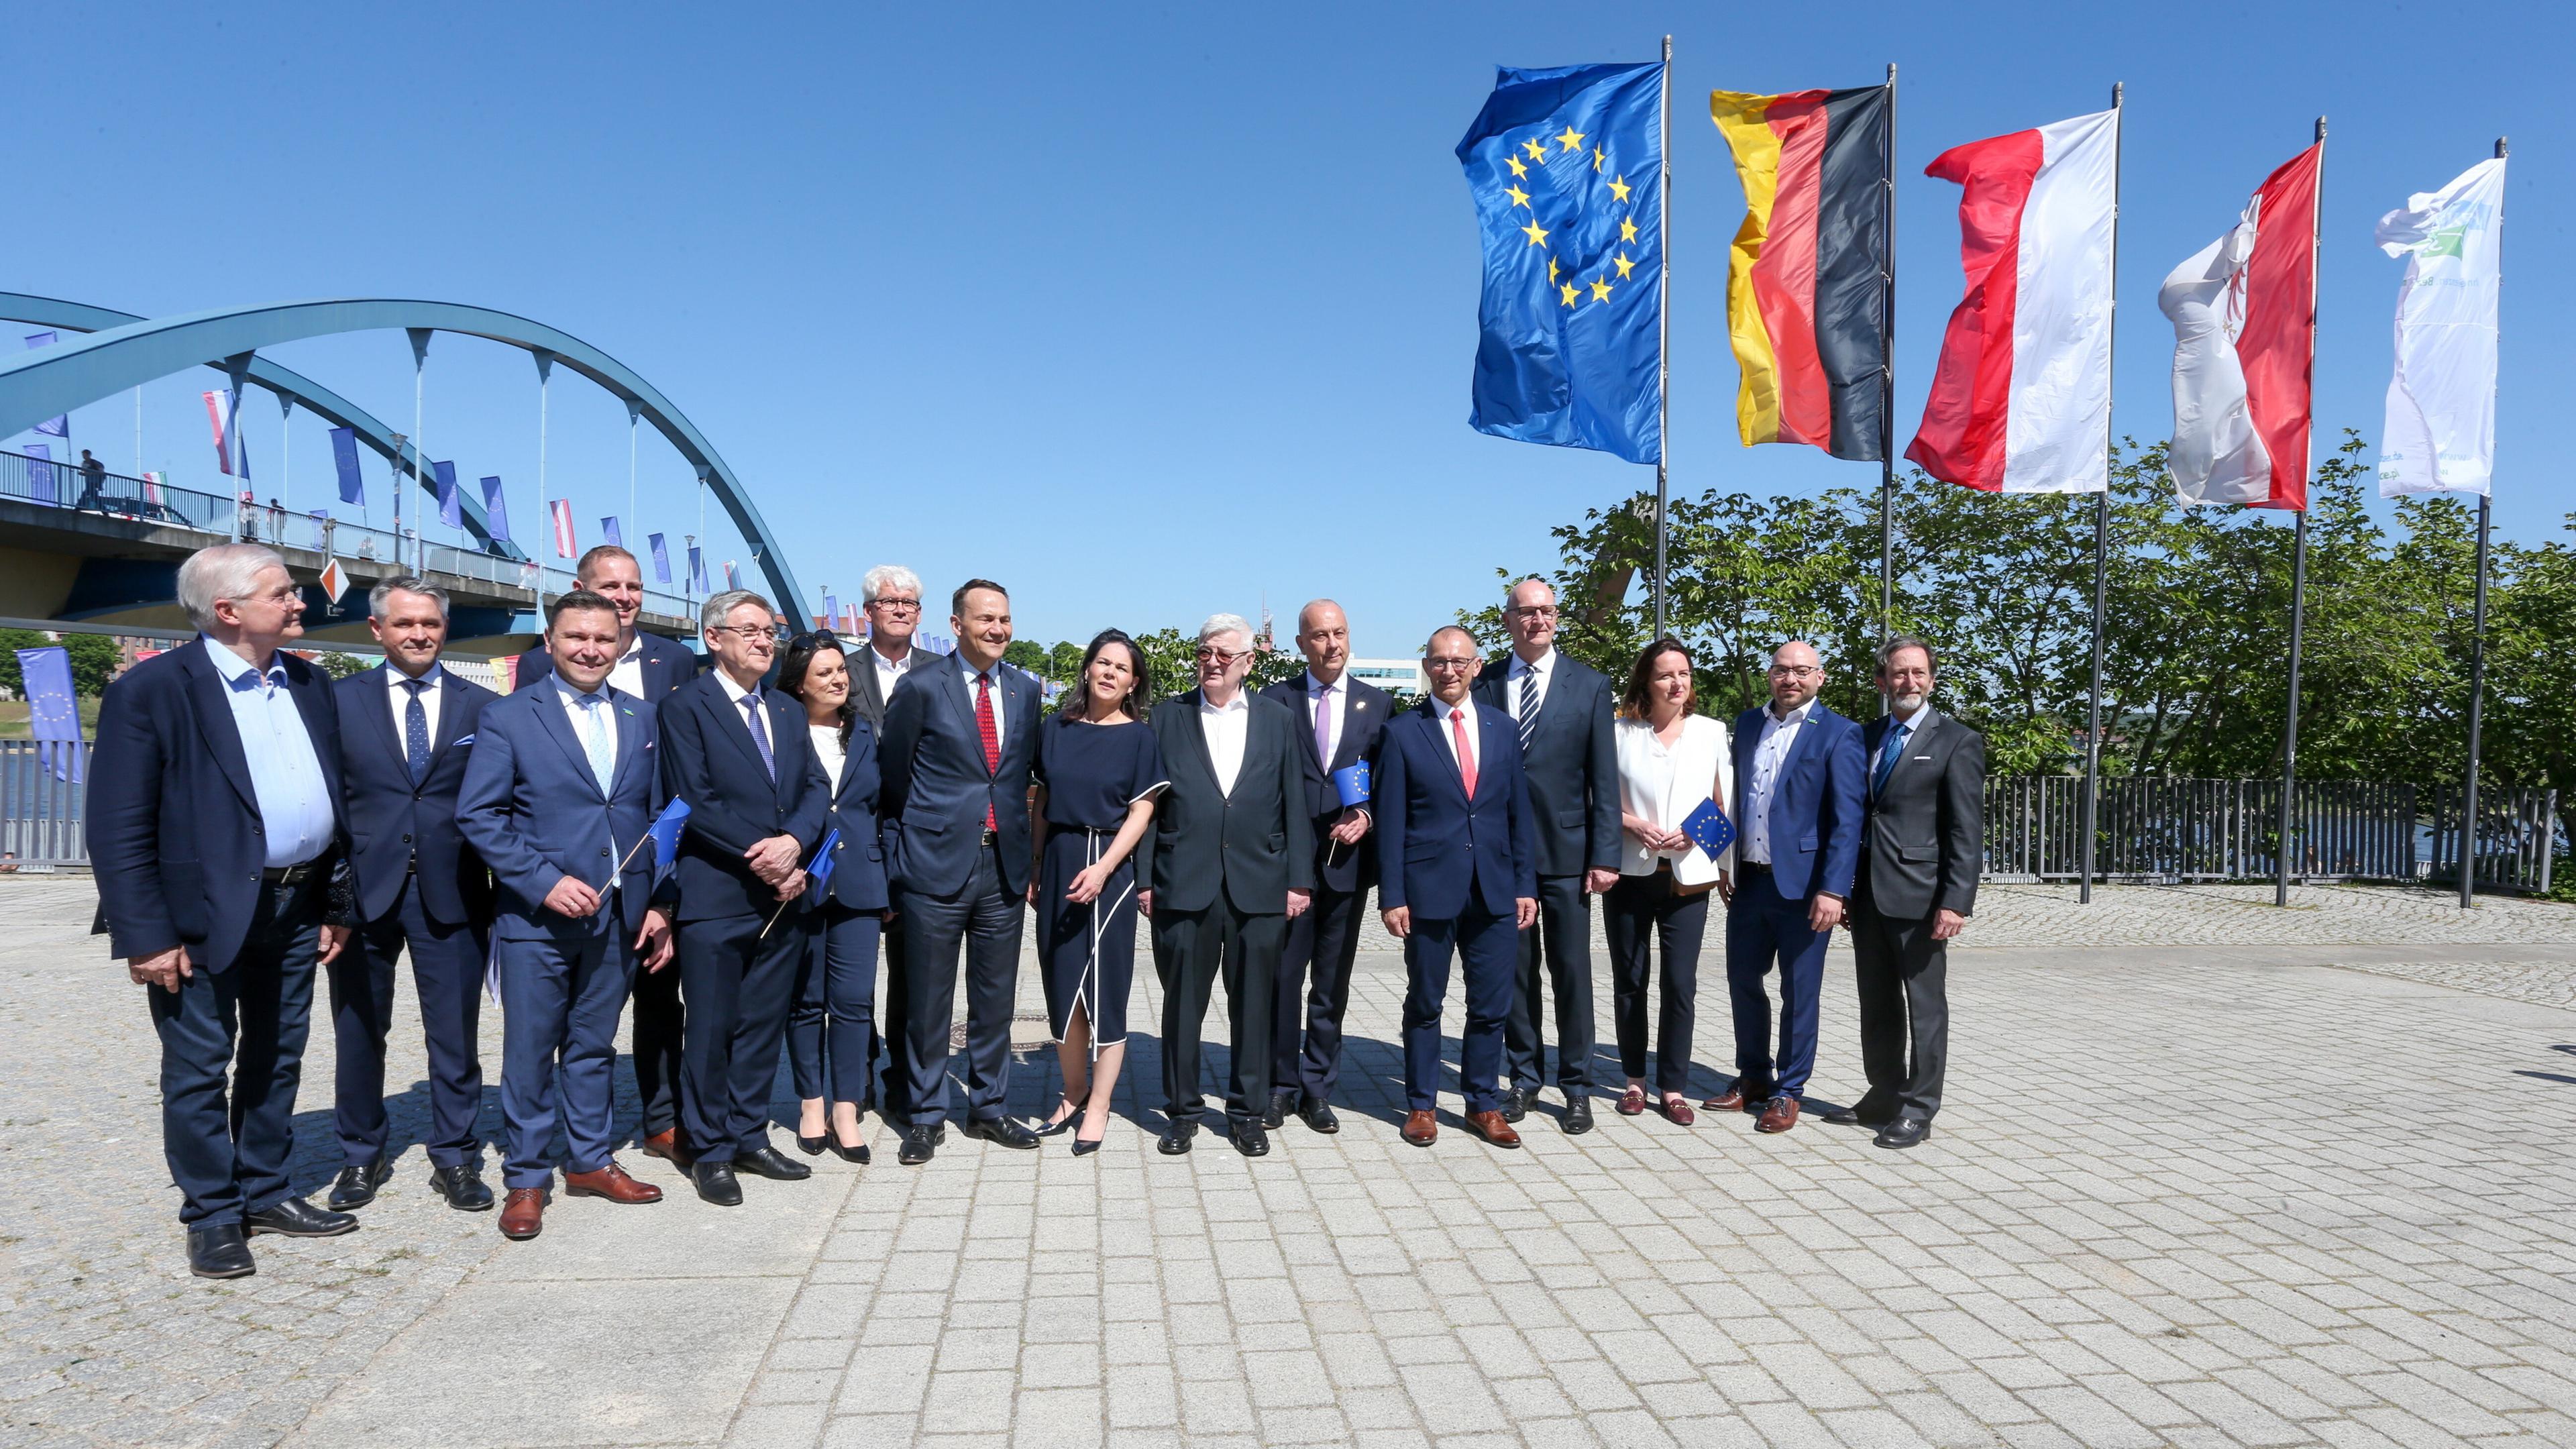 Deutsche und polnische Politiker posieren für ein Foto vor Flaggen Deutschlands, Polens und der EU